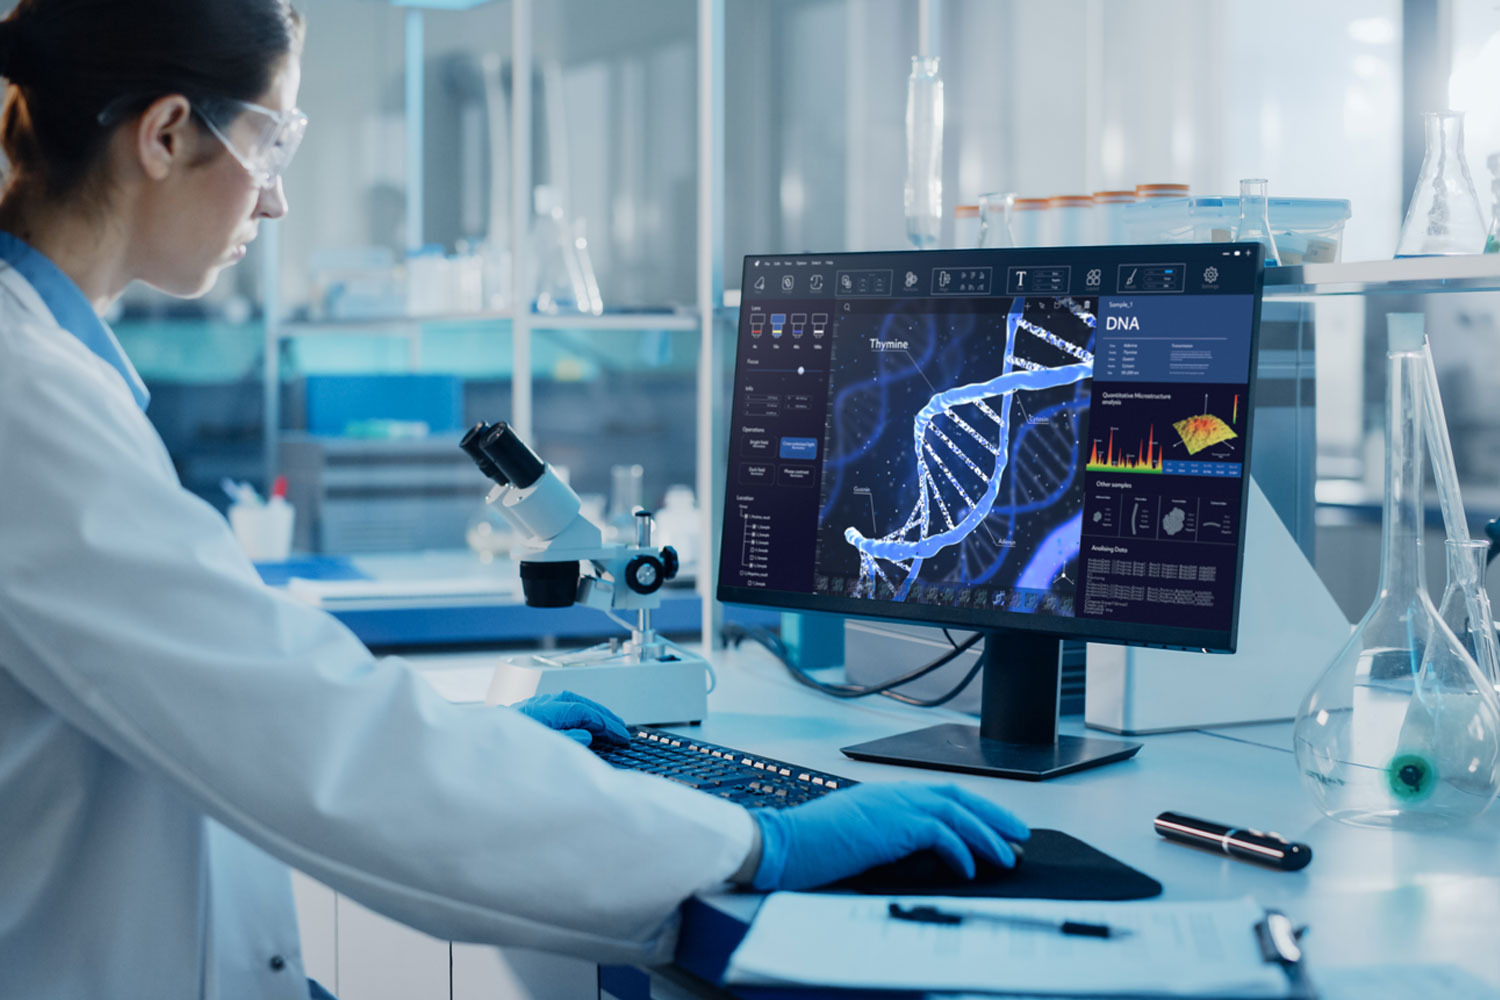 Einblick in ein Labor, in dem eine Frau auf einen Bildschirm mit einer DNA schaut